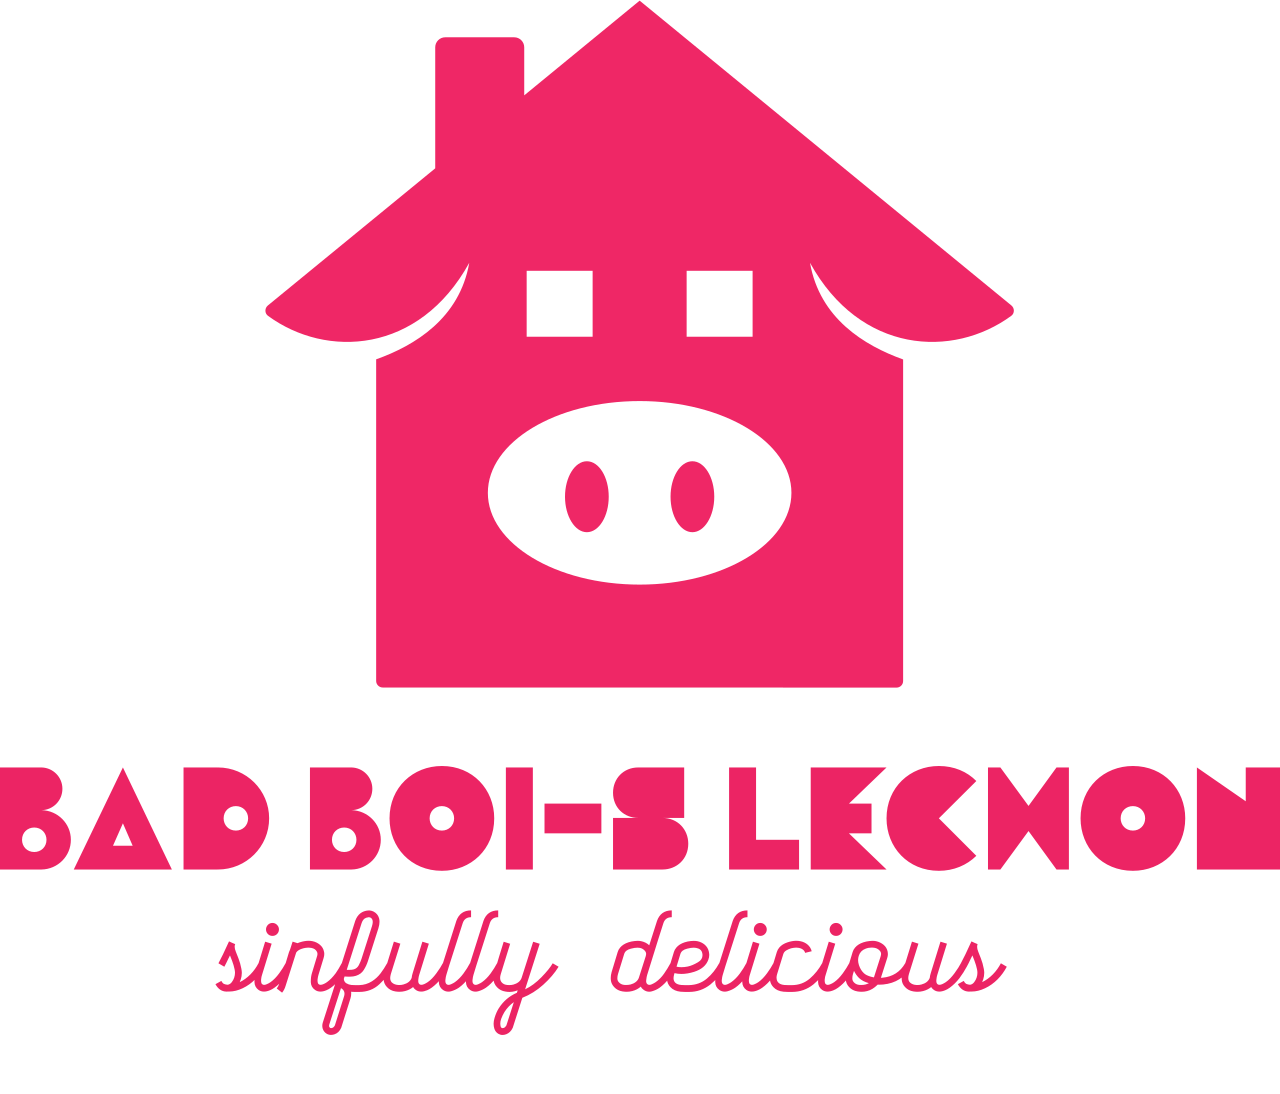 BAD BOI-S LECHON's logo